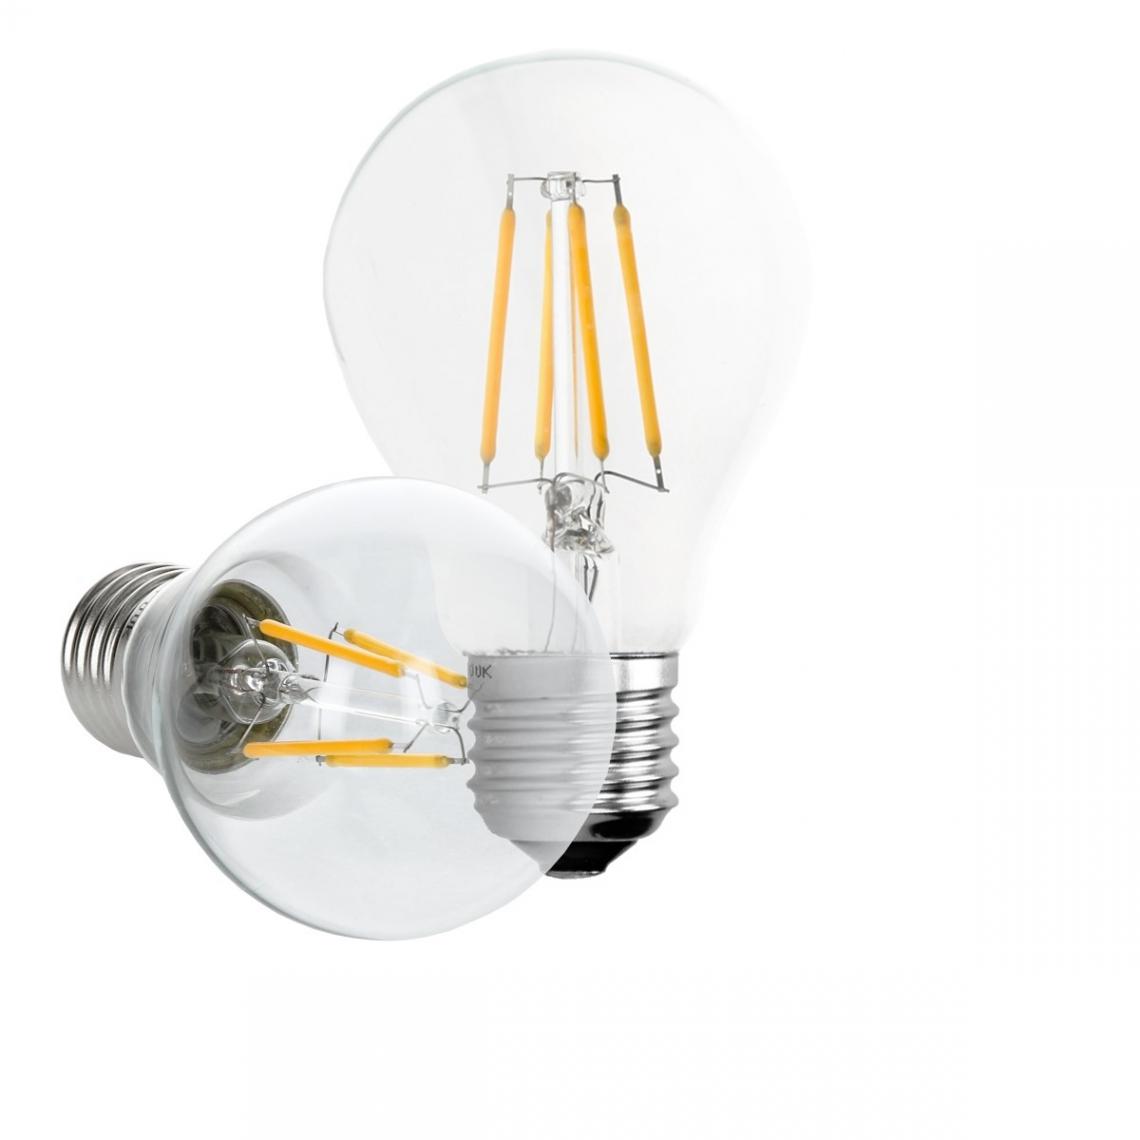 Ecd Germany - ECD Germany 5 x LED Filament de l'ampoule E27 classique Edison 4W 408 lumens Angle de 120° AC 220-240 reste caché et remplace 20W lampe incandescente blanc chaud - Ampoules LED